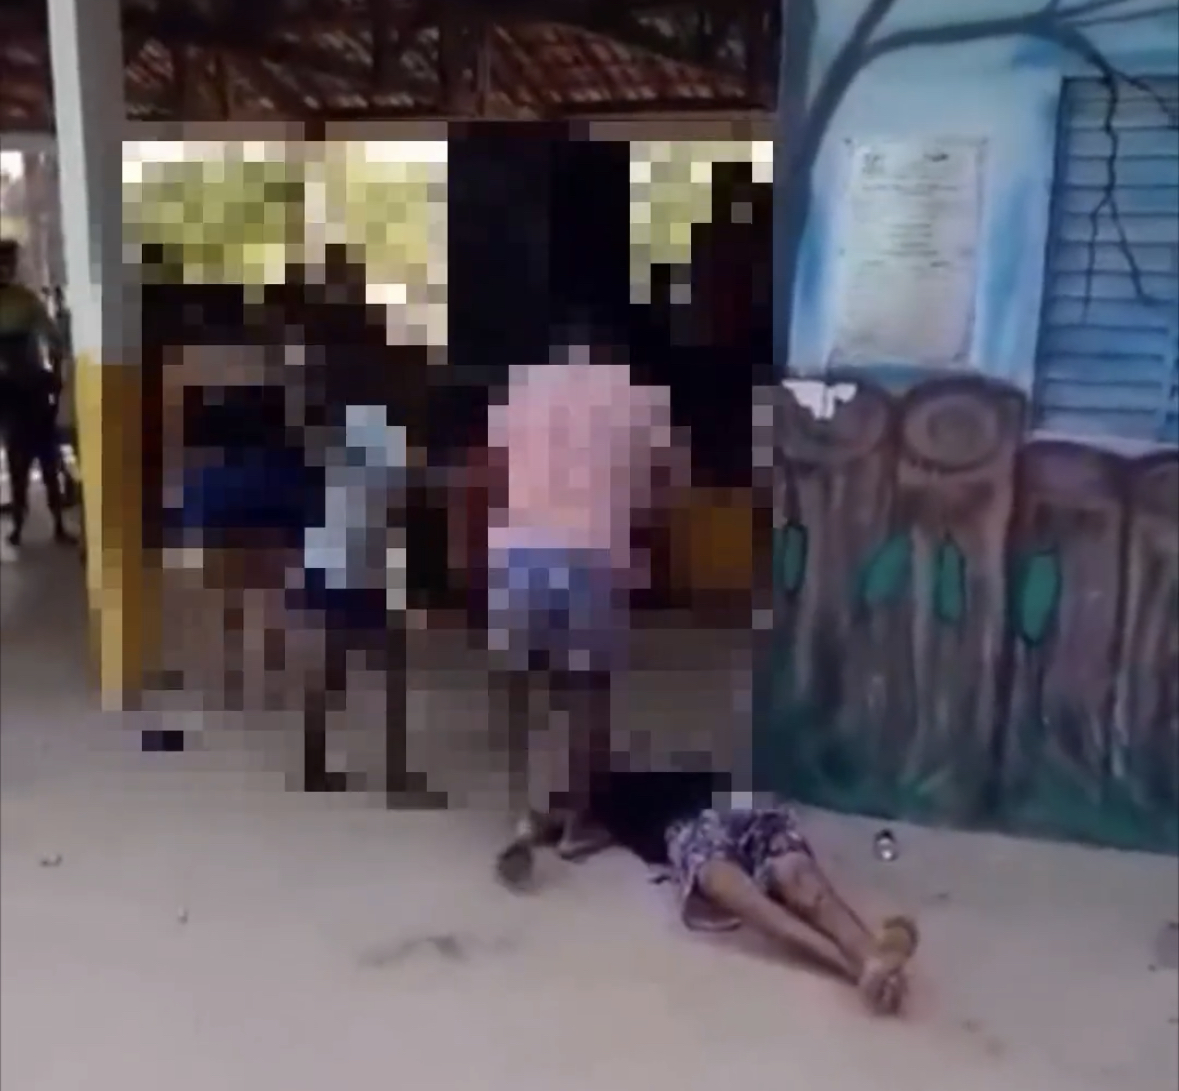 CRUELDADE: homem é morto a facadas em balneário de Lagoa do Tocantins; saiba detalhes